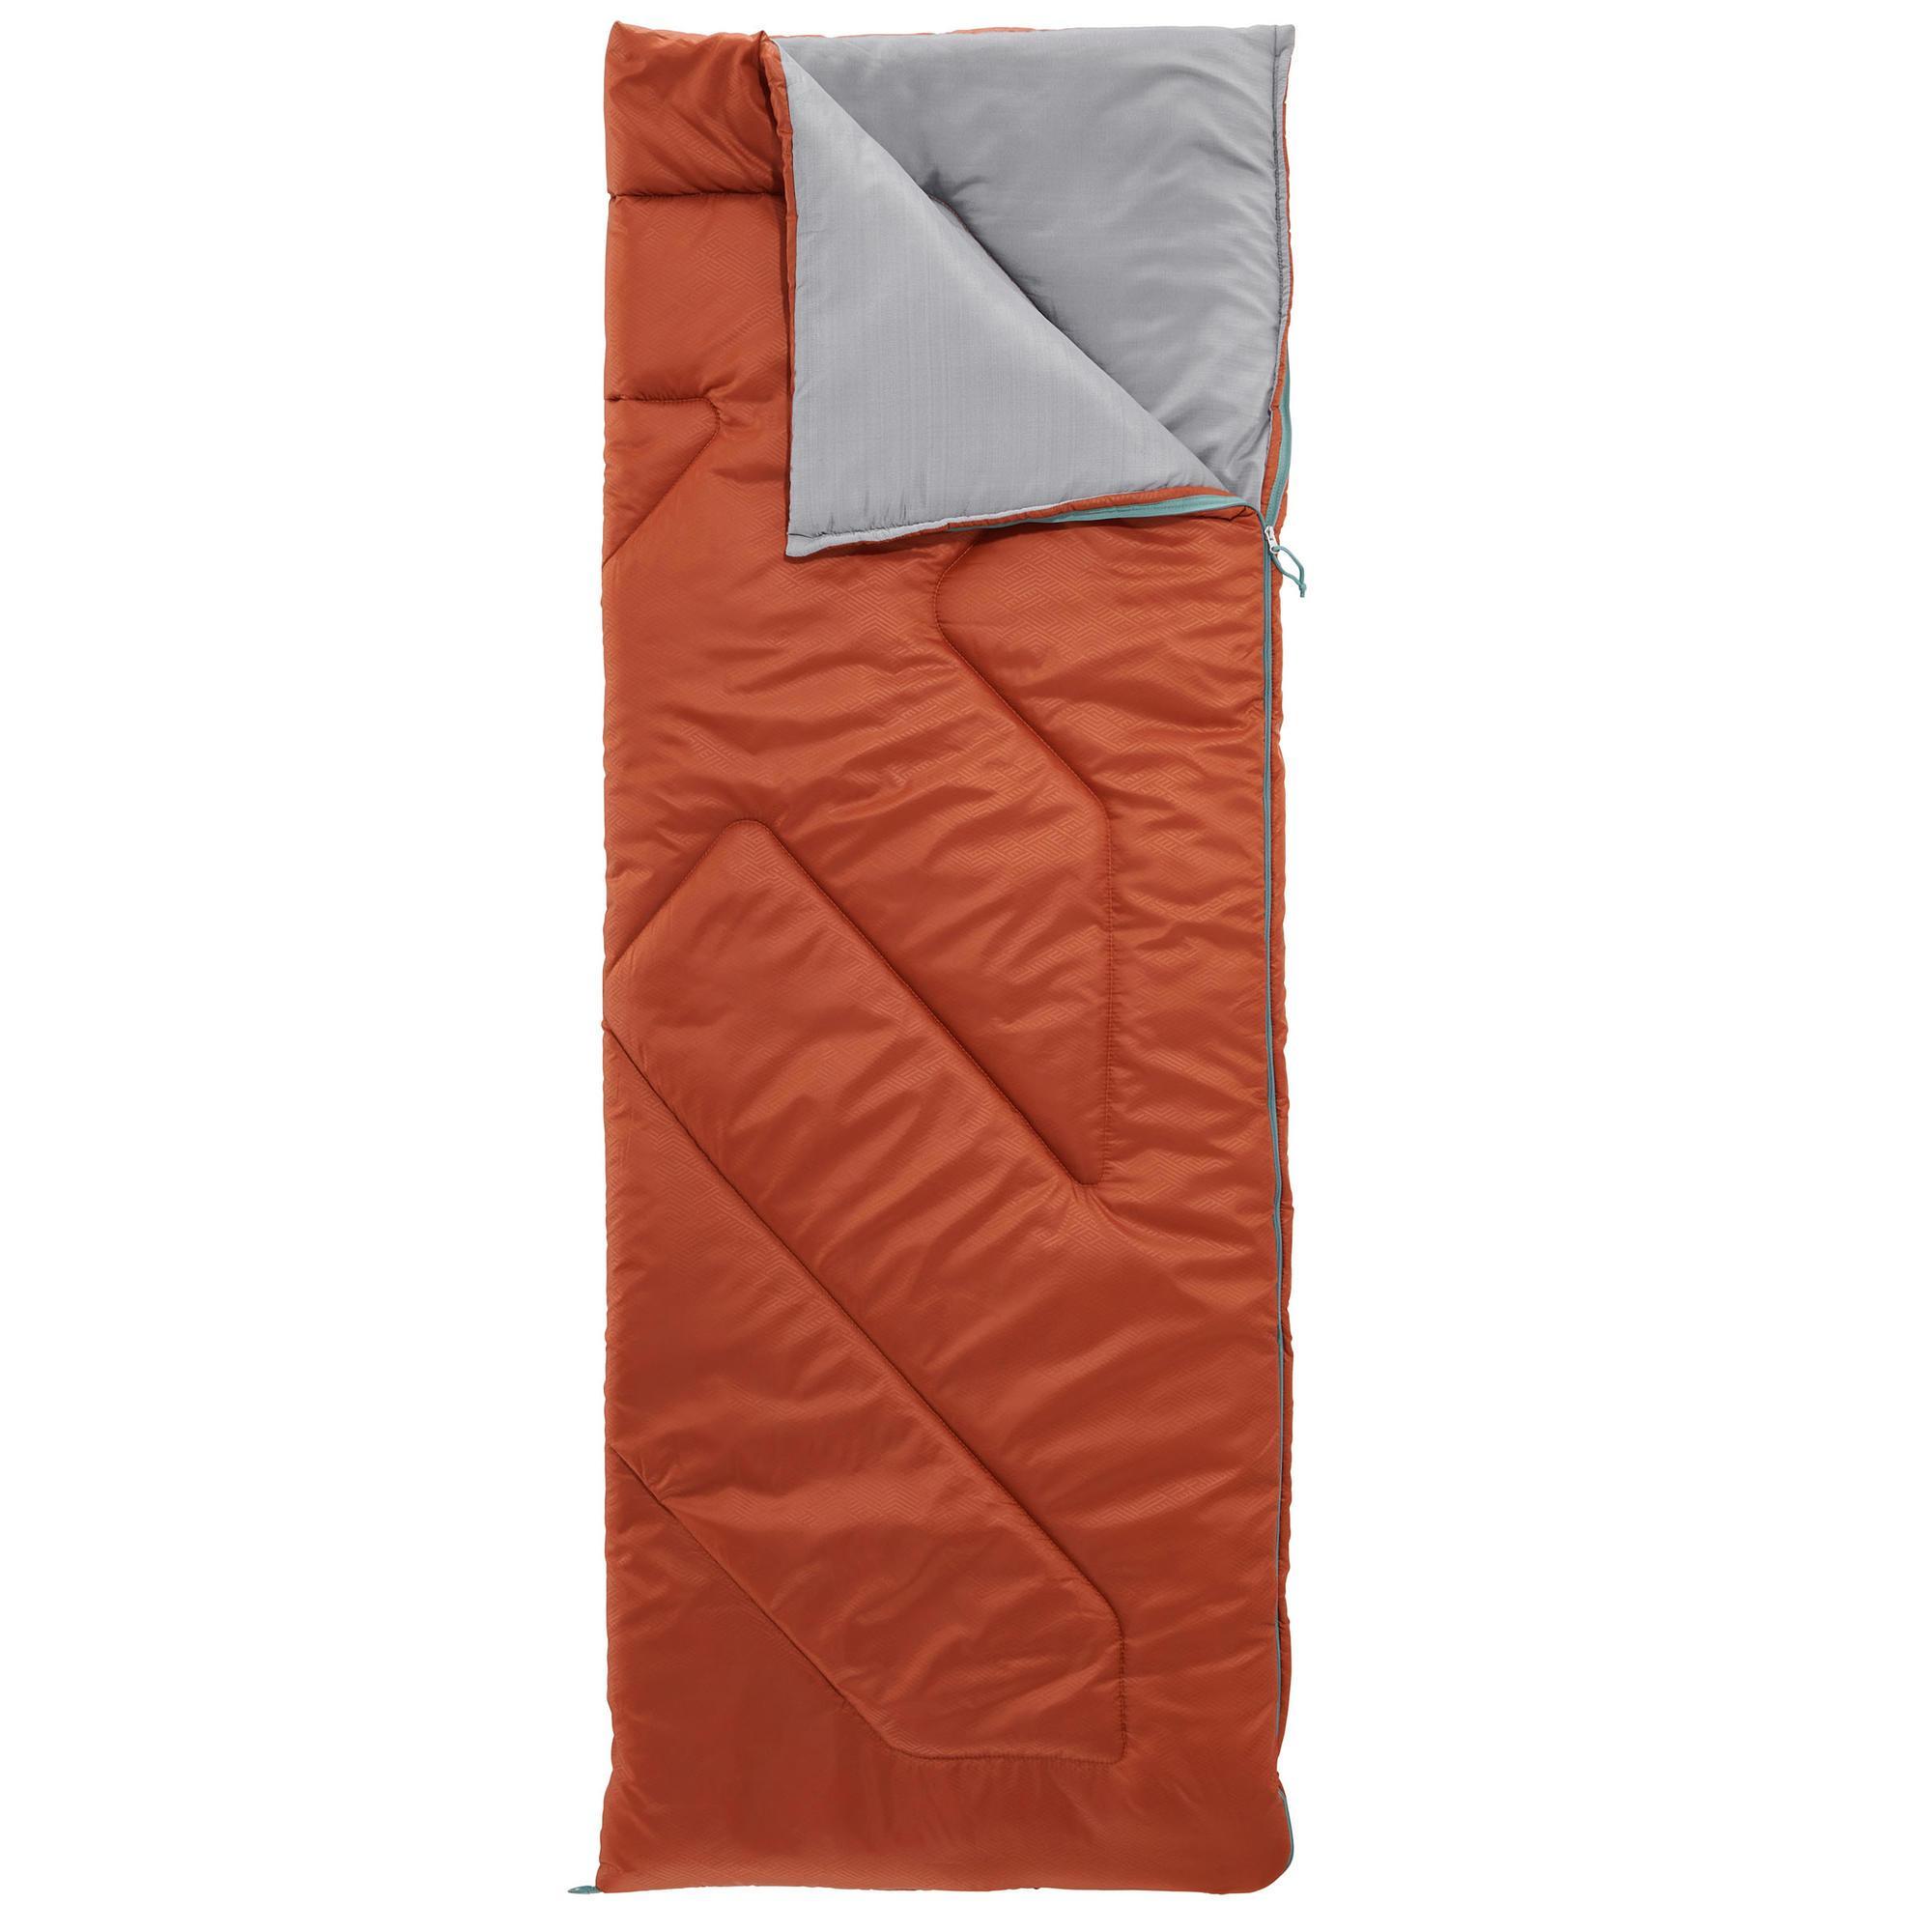 arpenaz 10 sleeping bag